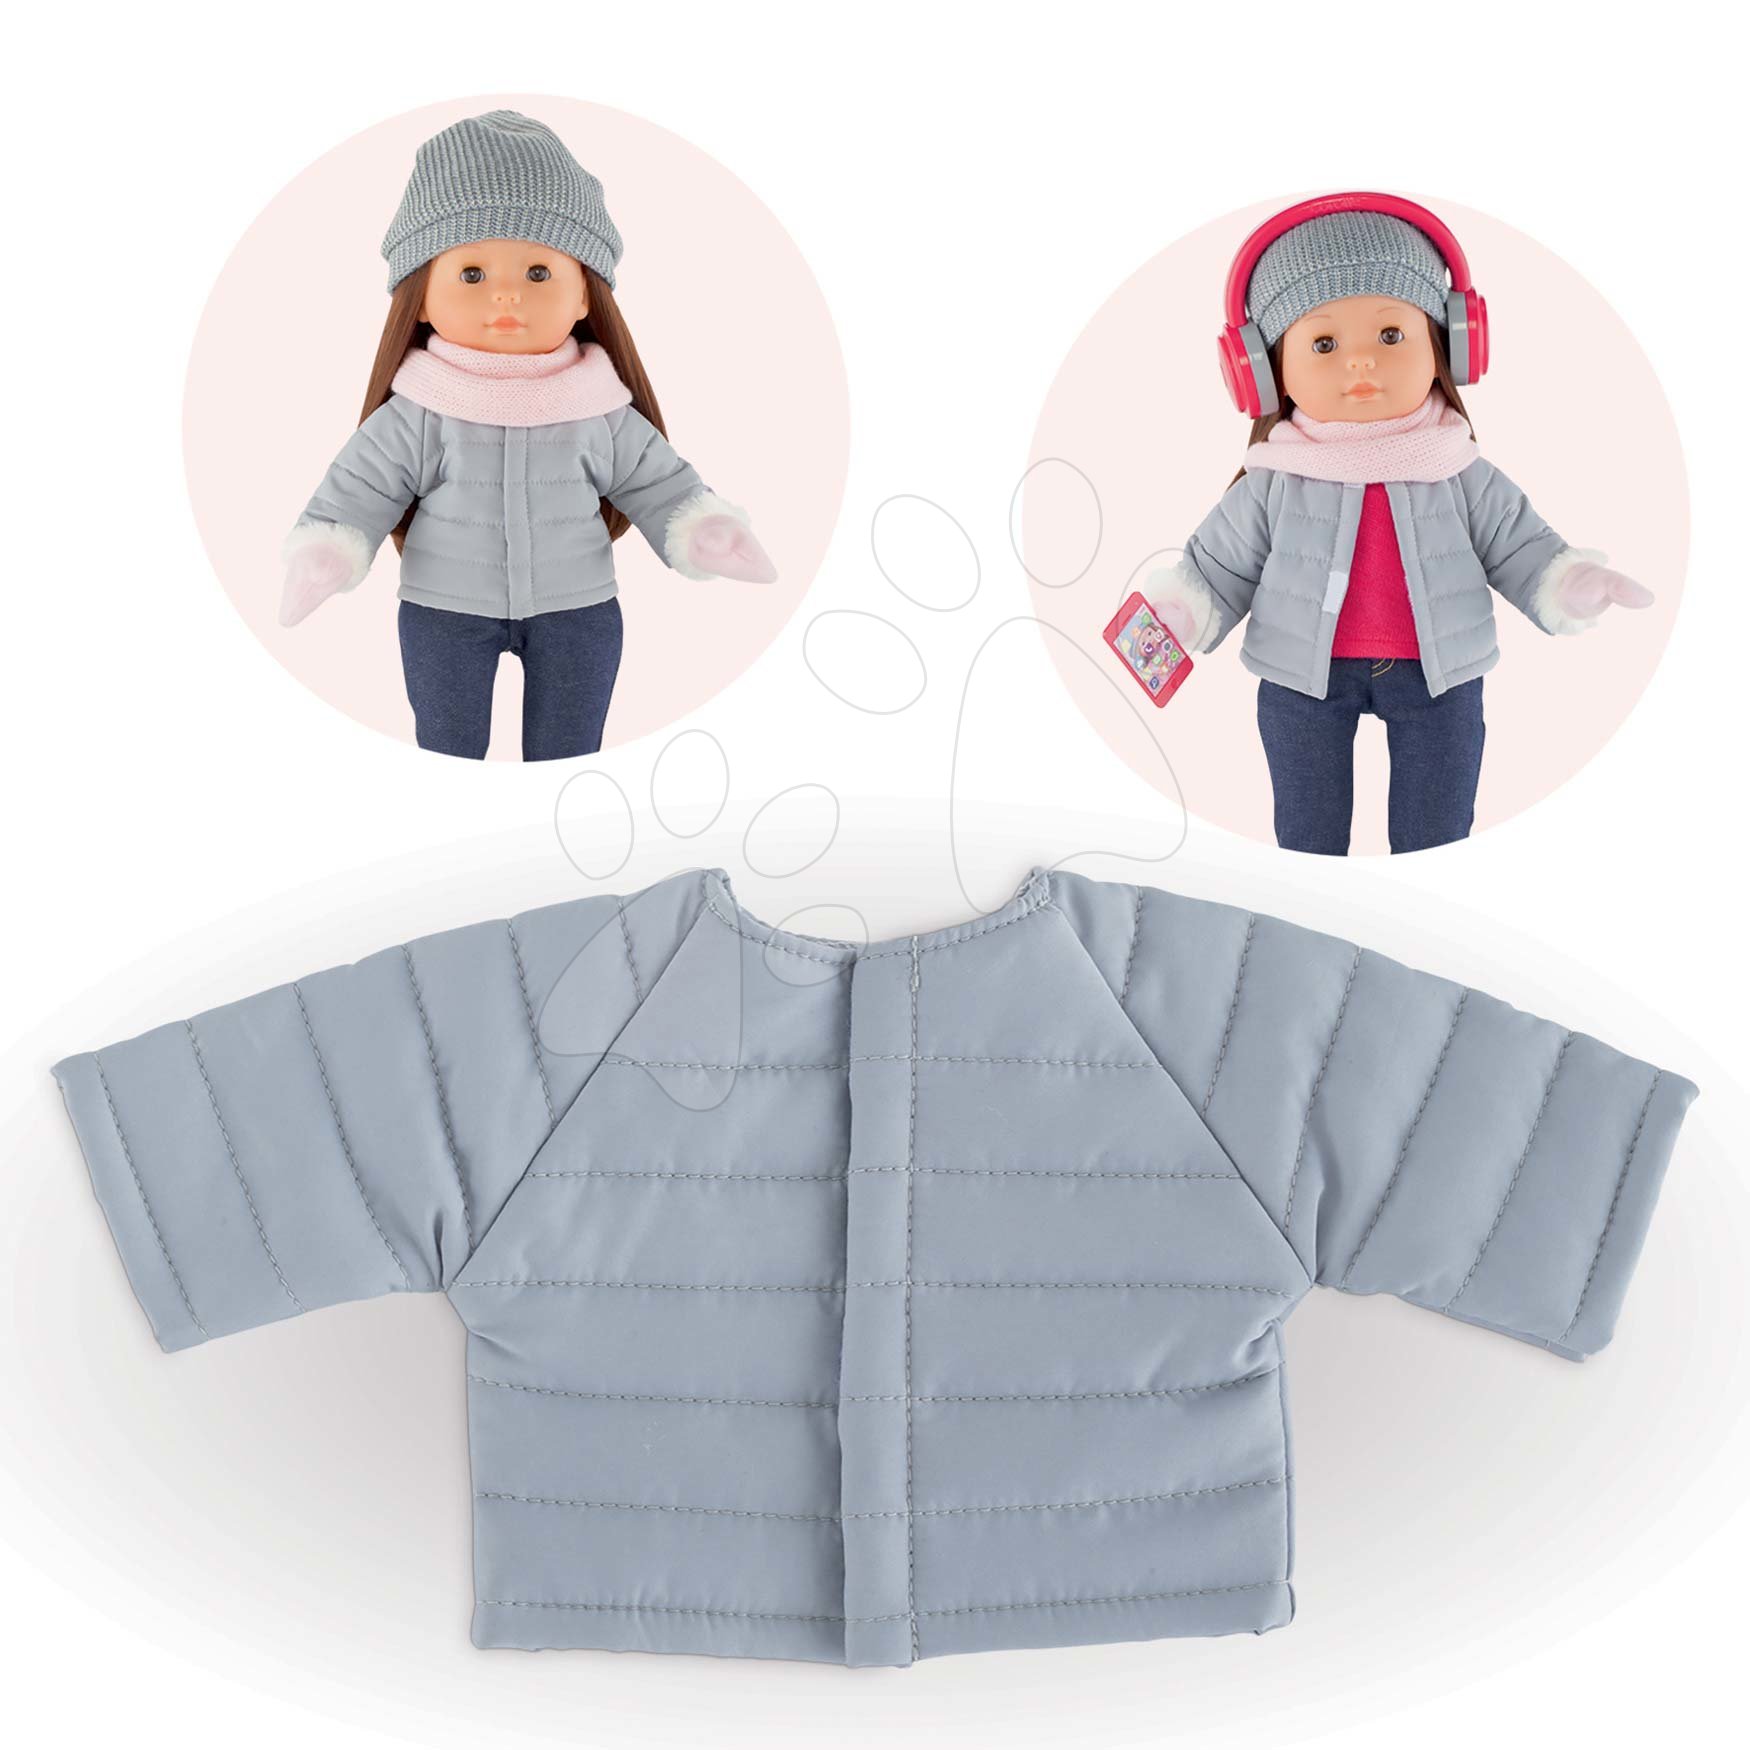 Oblečenie Padded Jacket Grey Ma Corolle pre 36 cm bábiku od 4 rokov